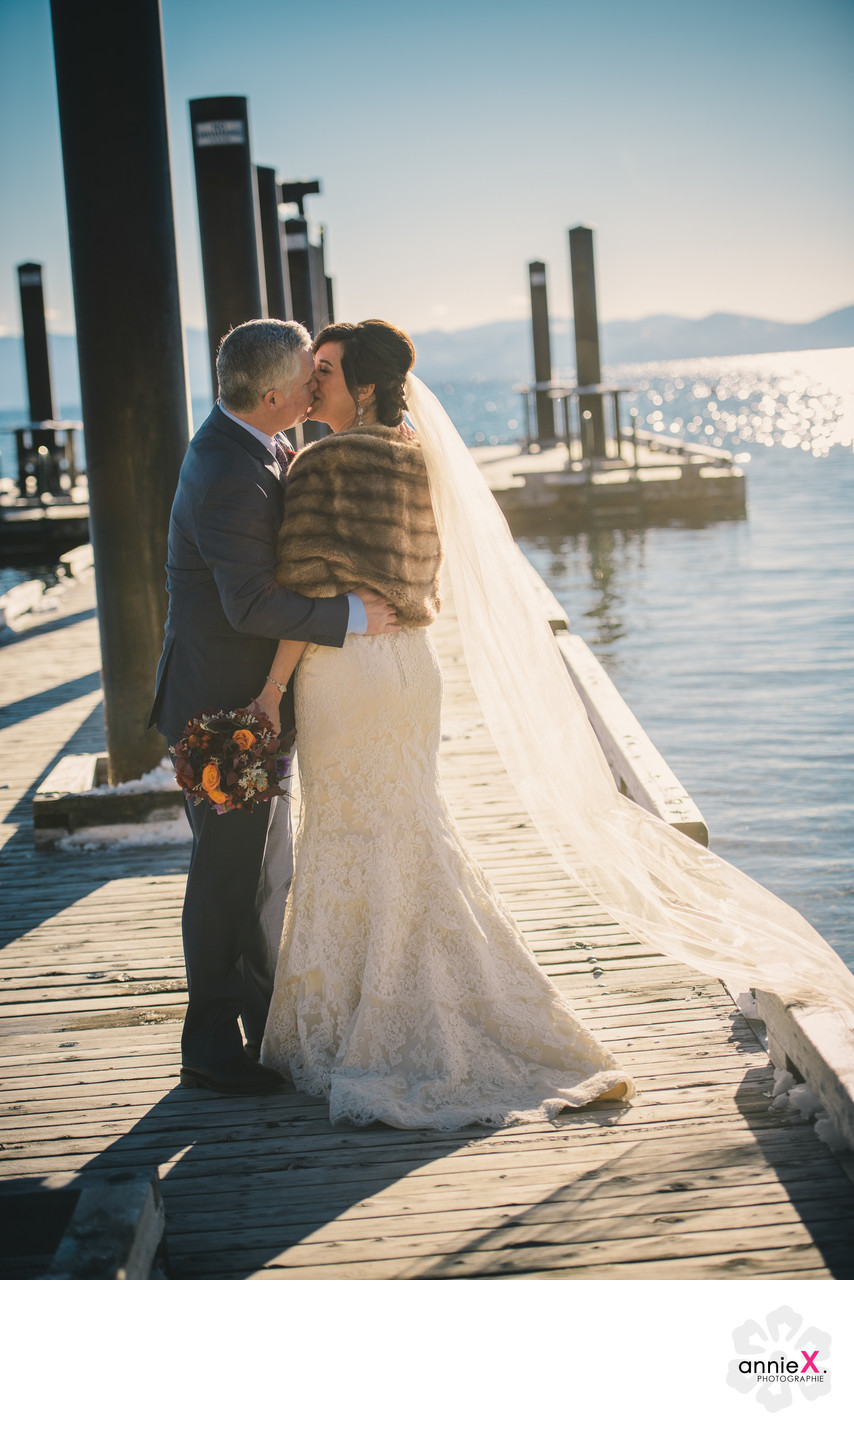 Hyatt pier in winter with bride and groom